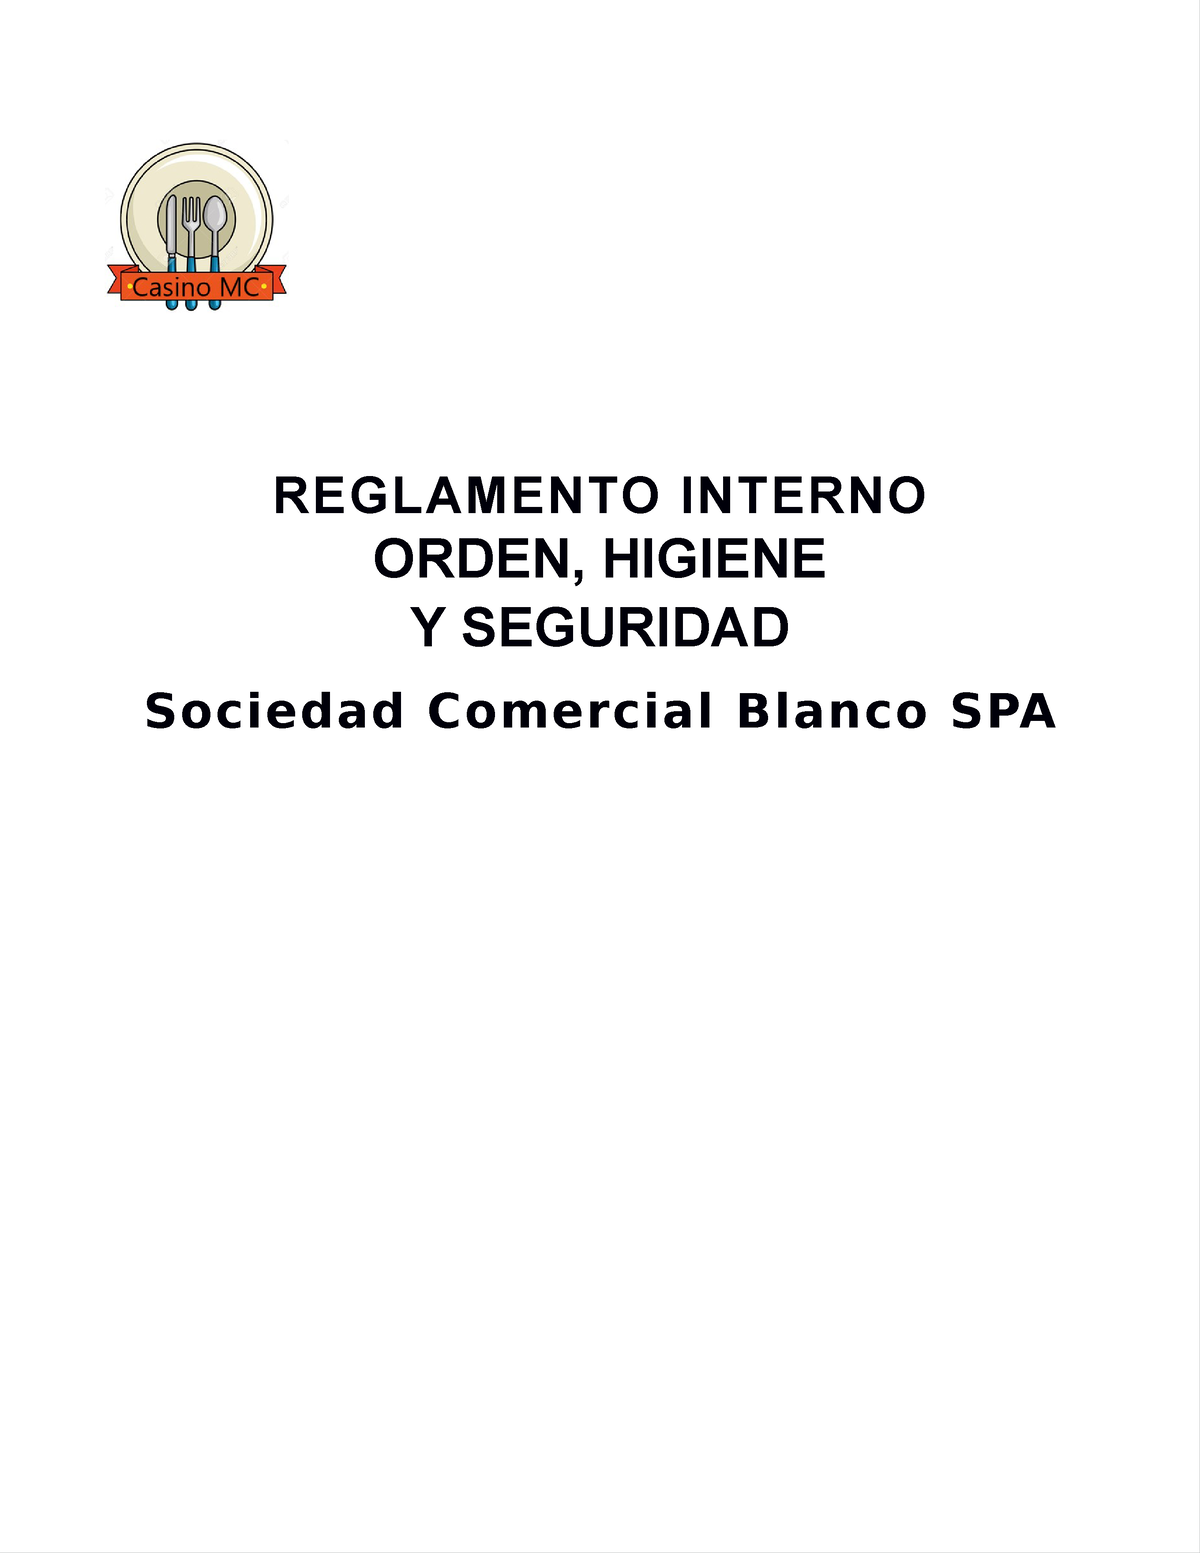 Reglamento De Orden Higiene Y Seguridad Reglamento Interno Orden Higiene Y Seguridad Sociedad 4408